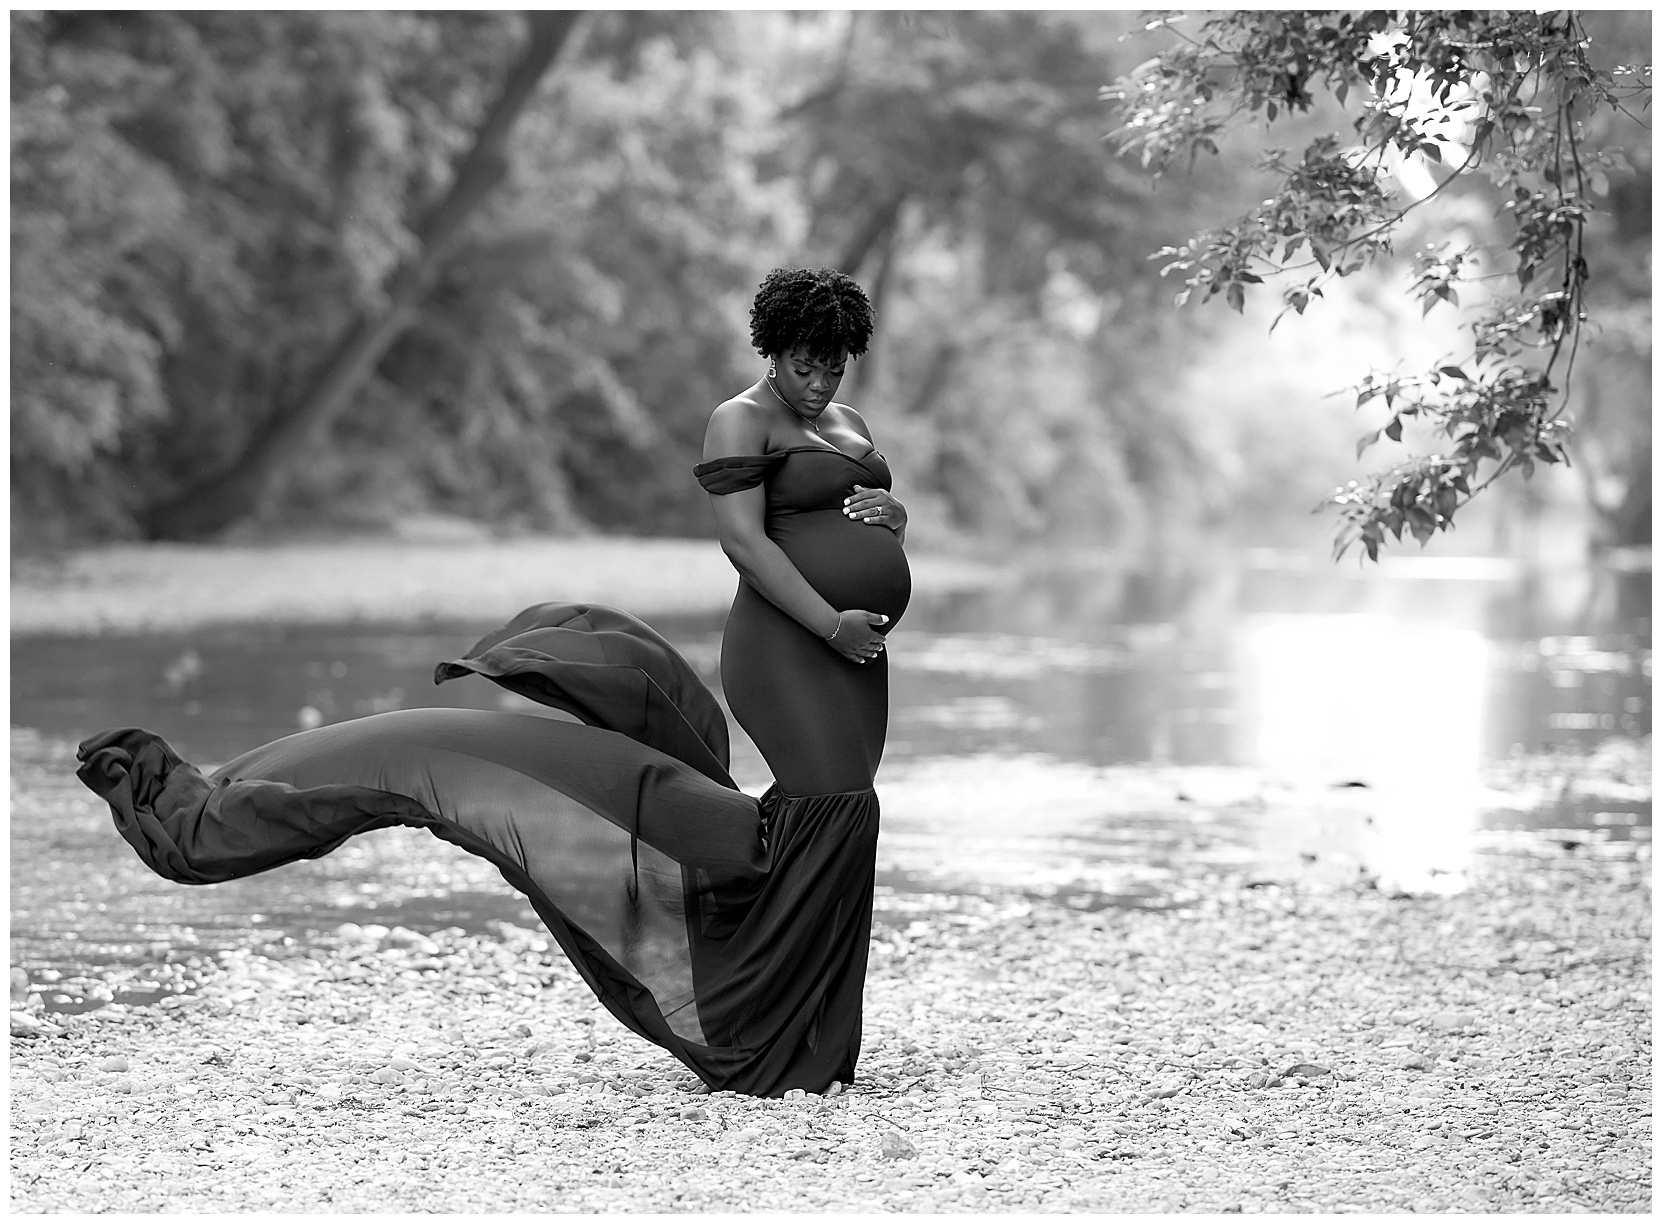 Beautiful outdoor maternity photos